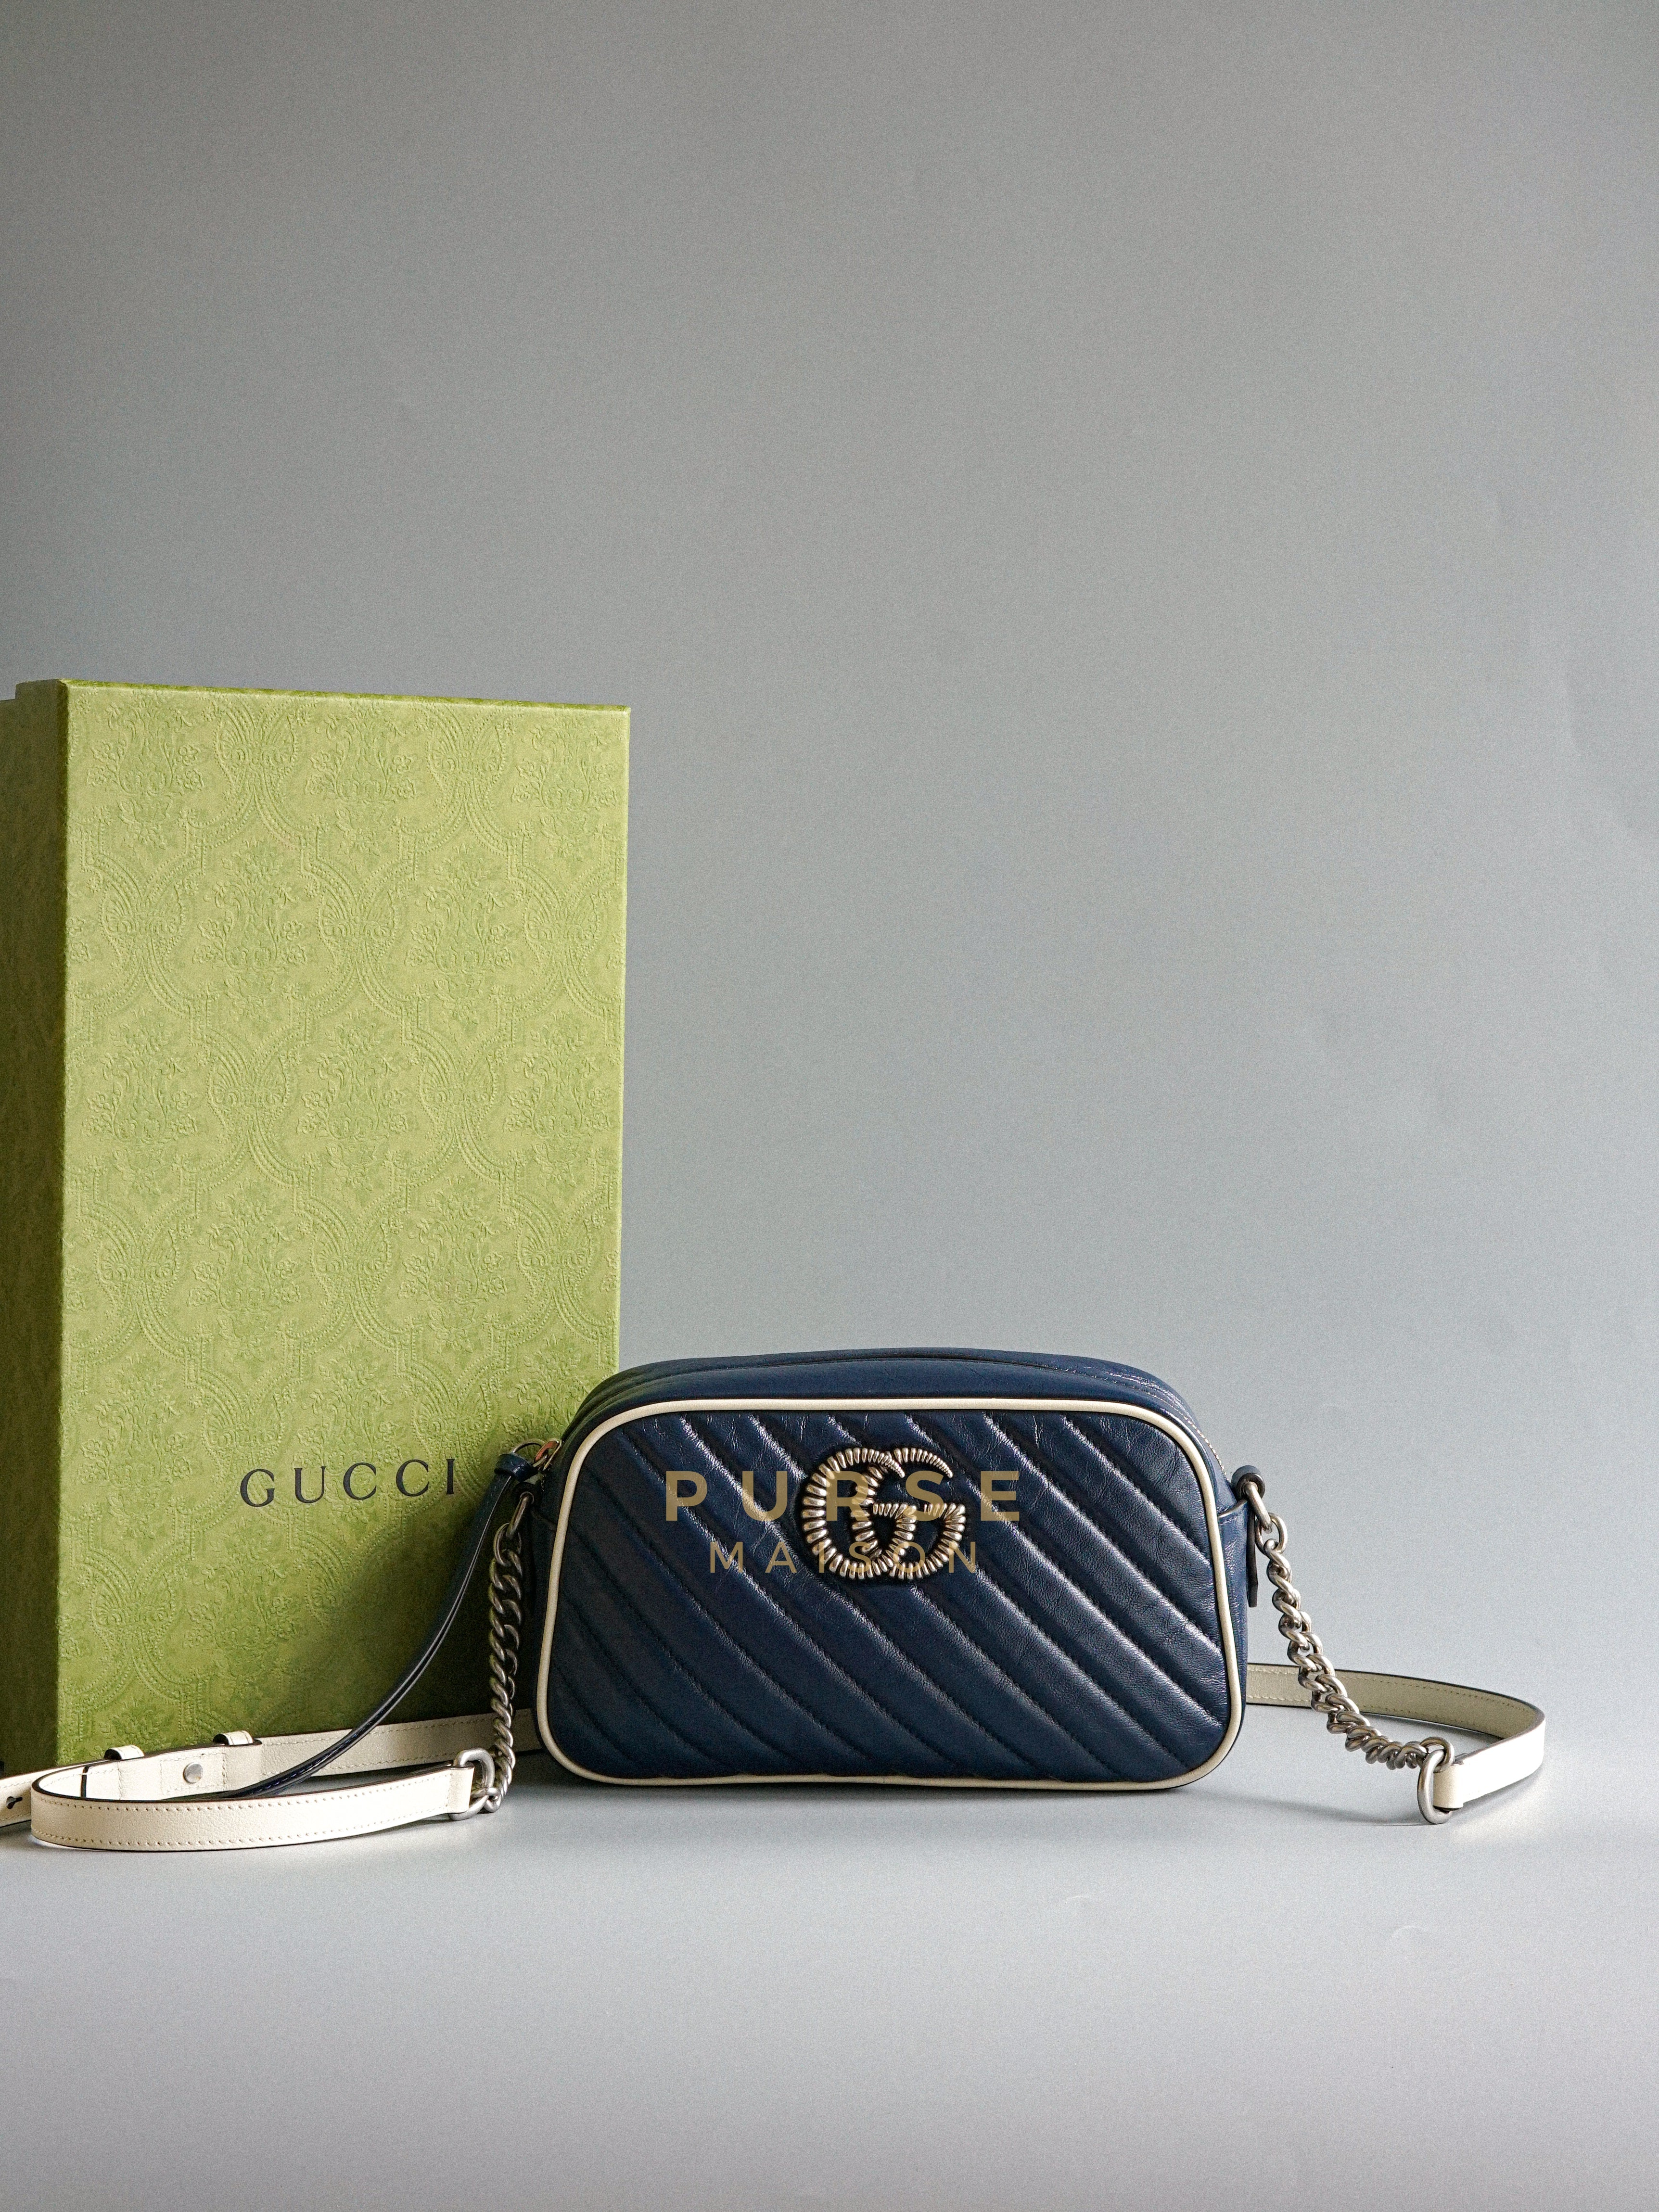 Marmont Matelasse Chain Small Diagonal Torchon (Navy Blue/White) | Purse Maison Luxury Bags Shop